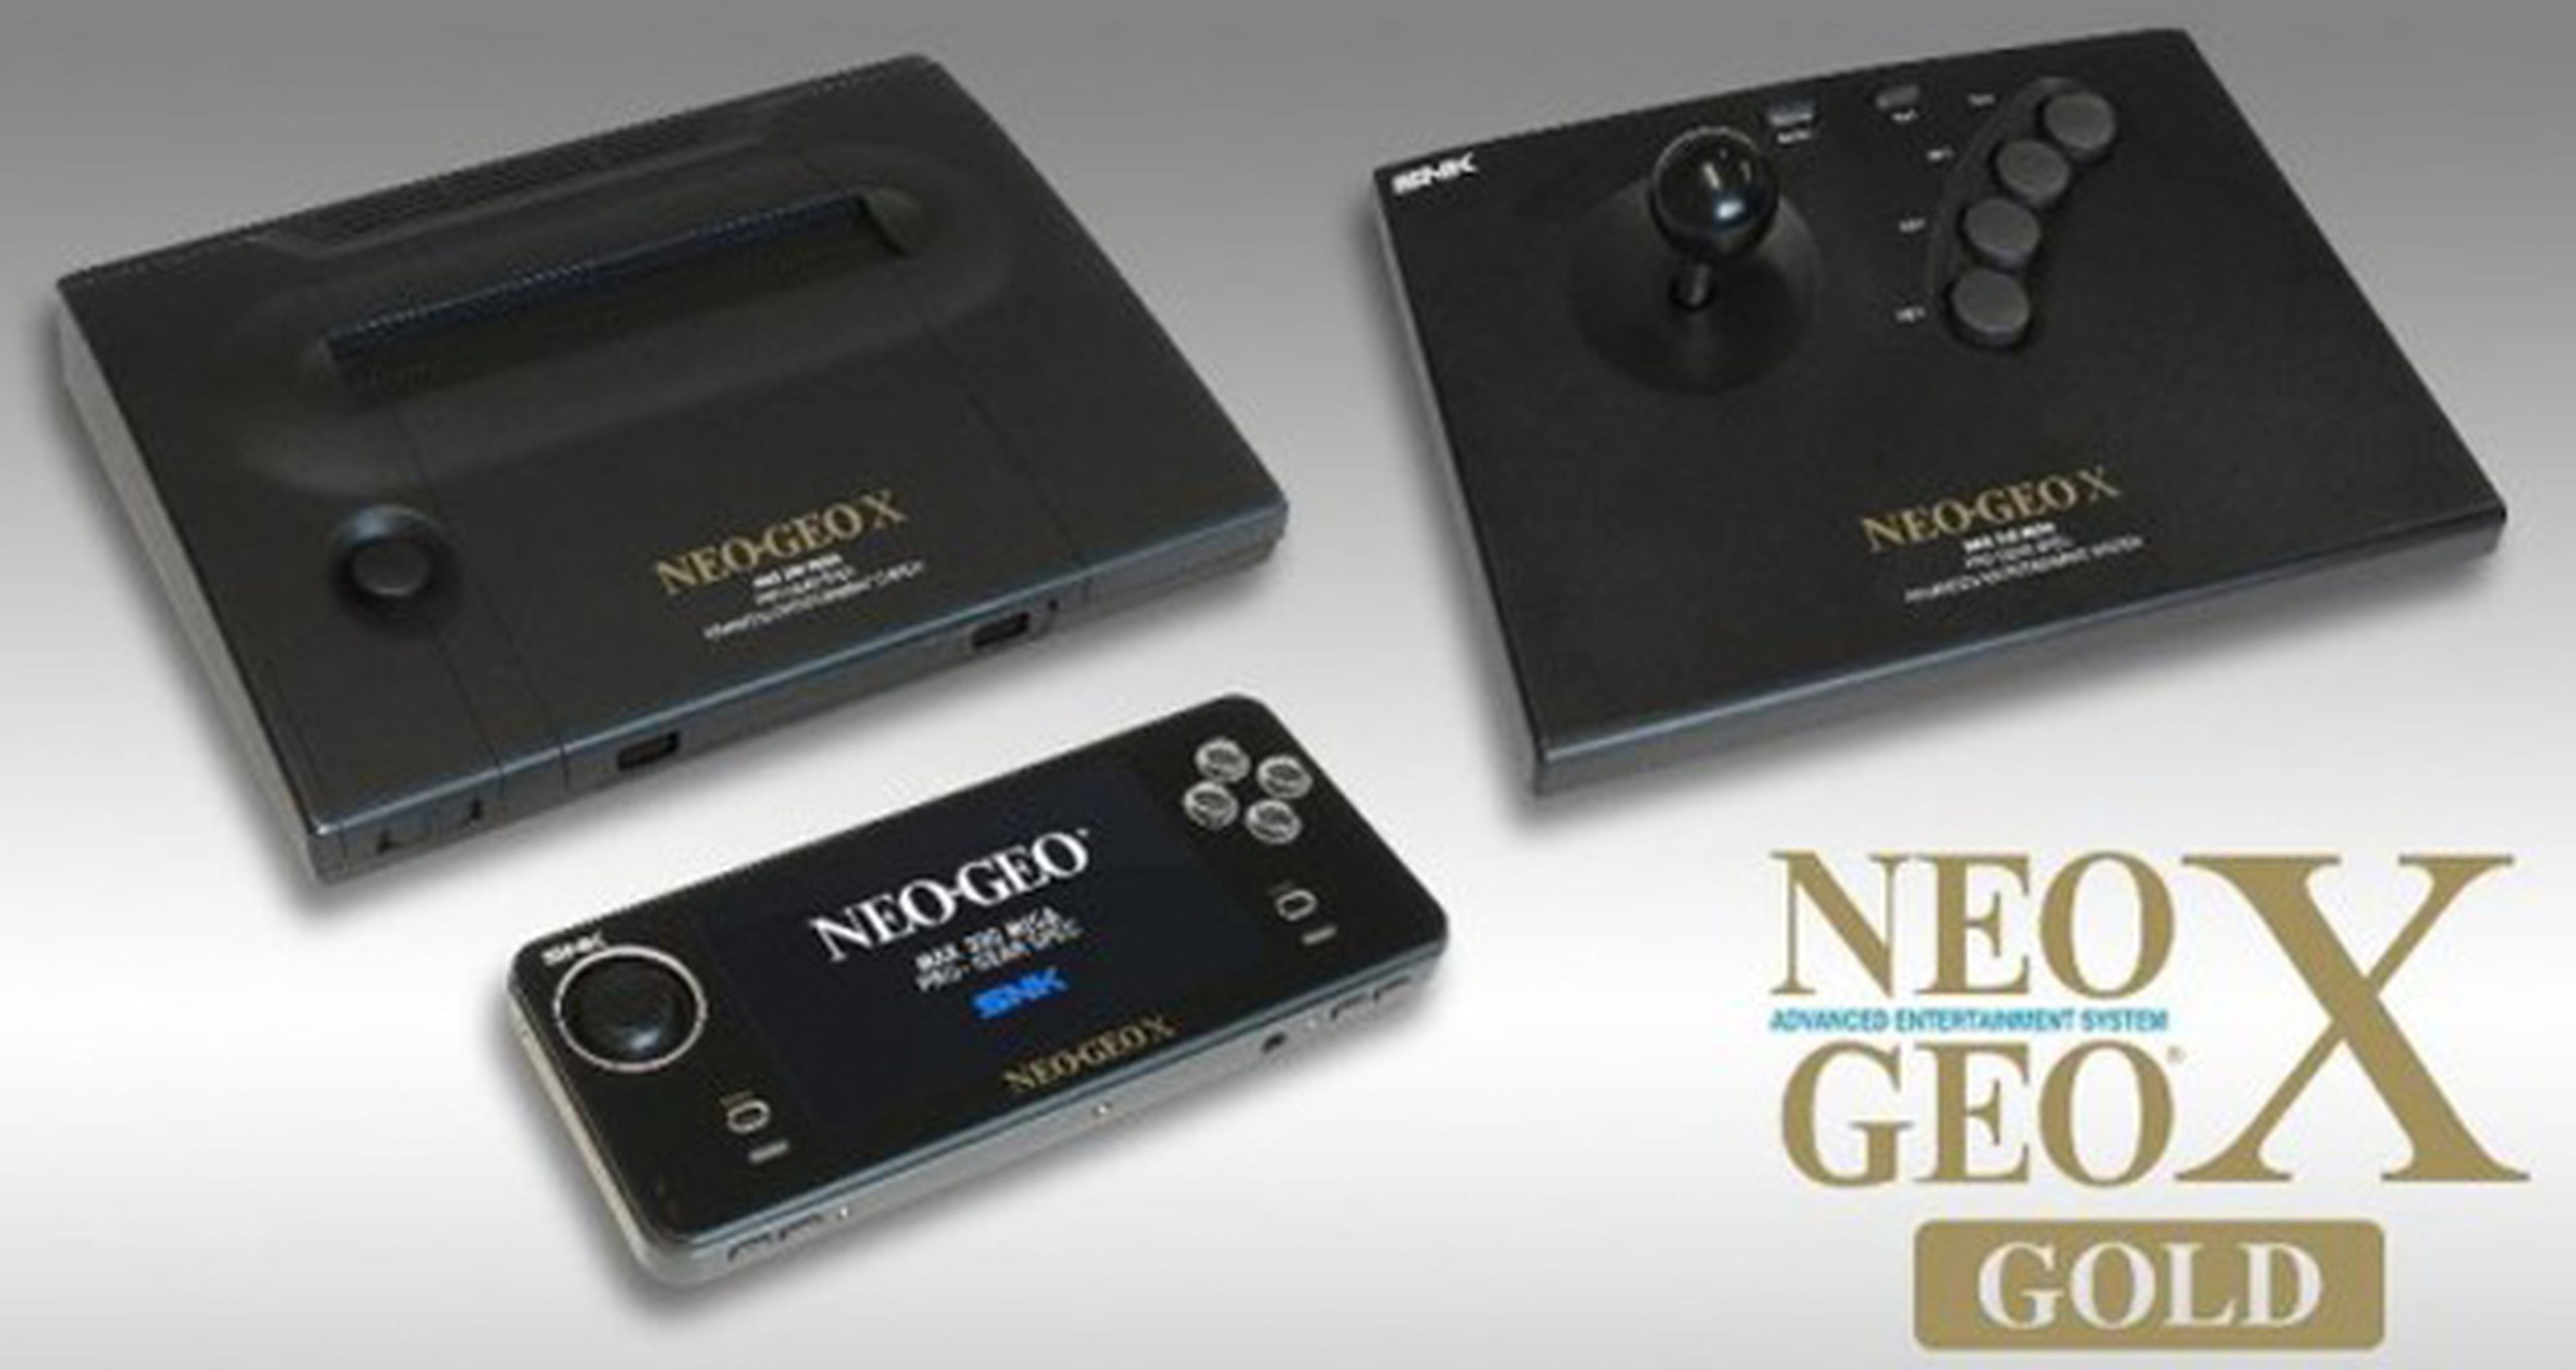 Tommo desmiente a SNK y sigue distribuyendo Neo Geo X